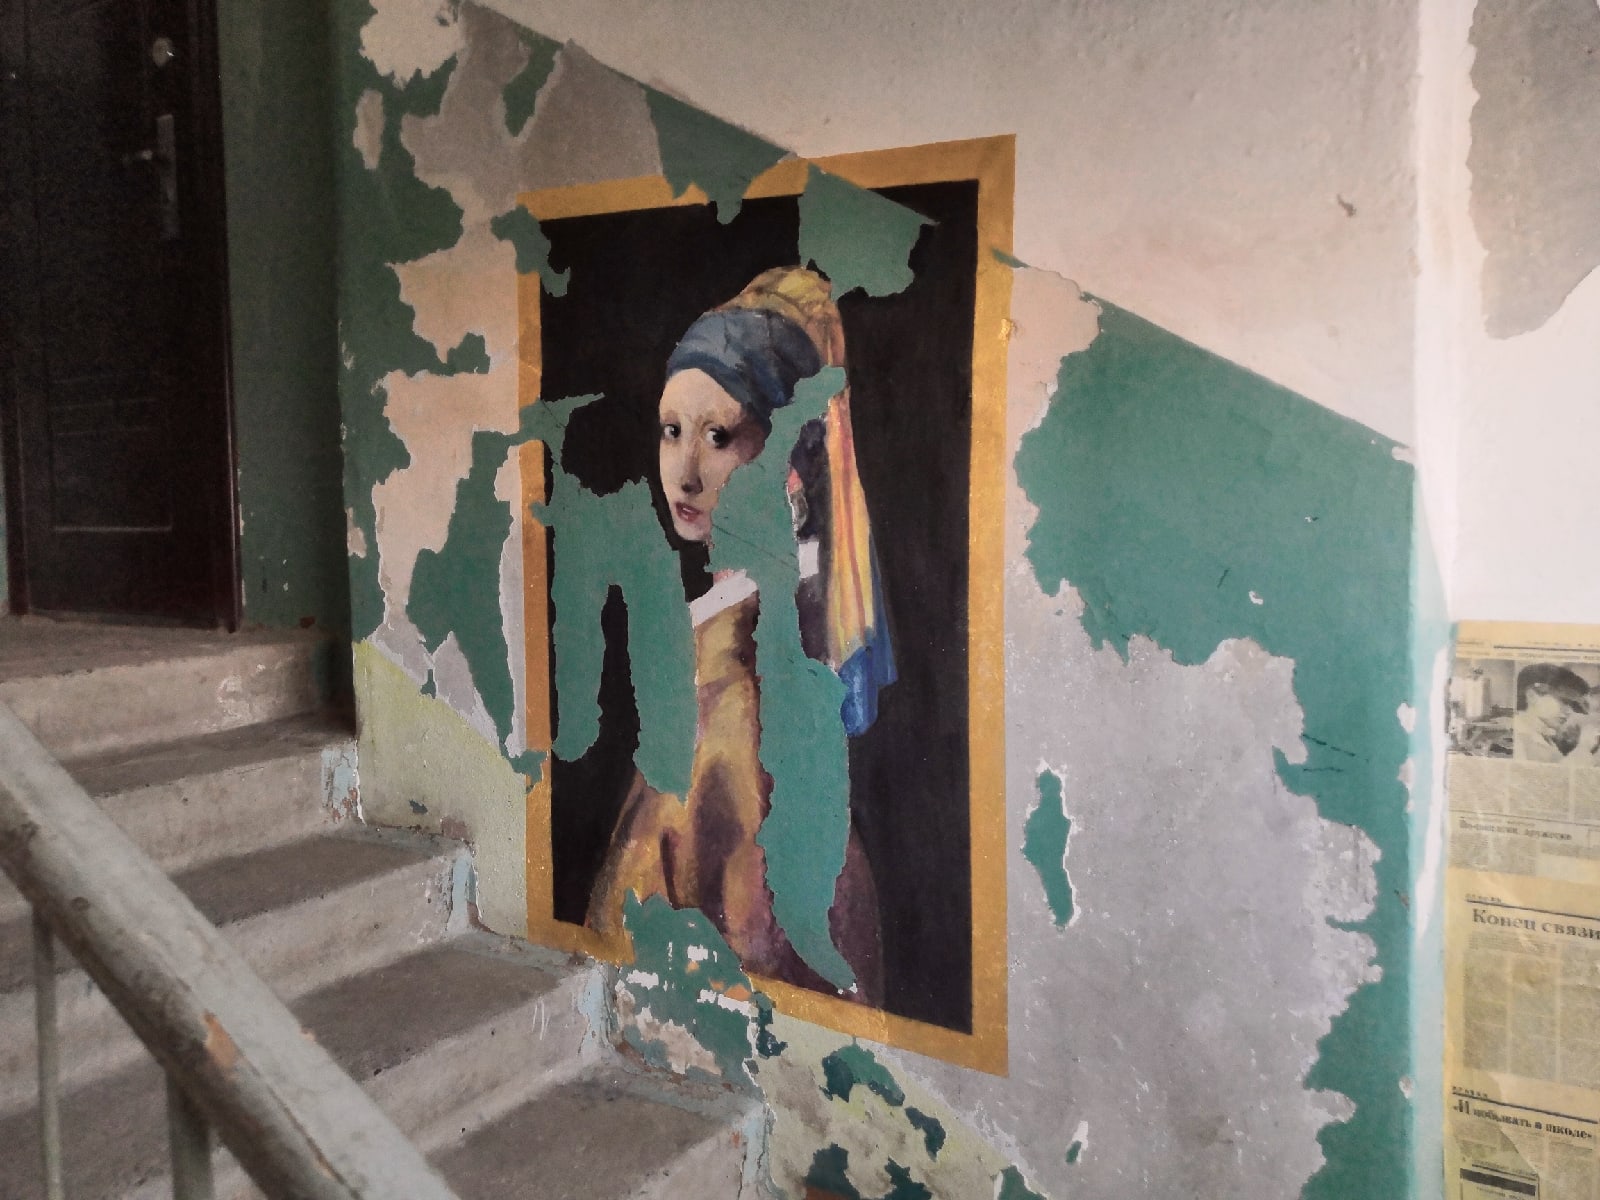 В Каменске-Уральском студенты разрисовали разбитый подъезд картинами Вермеера и да Винчи